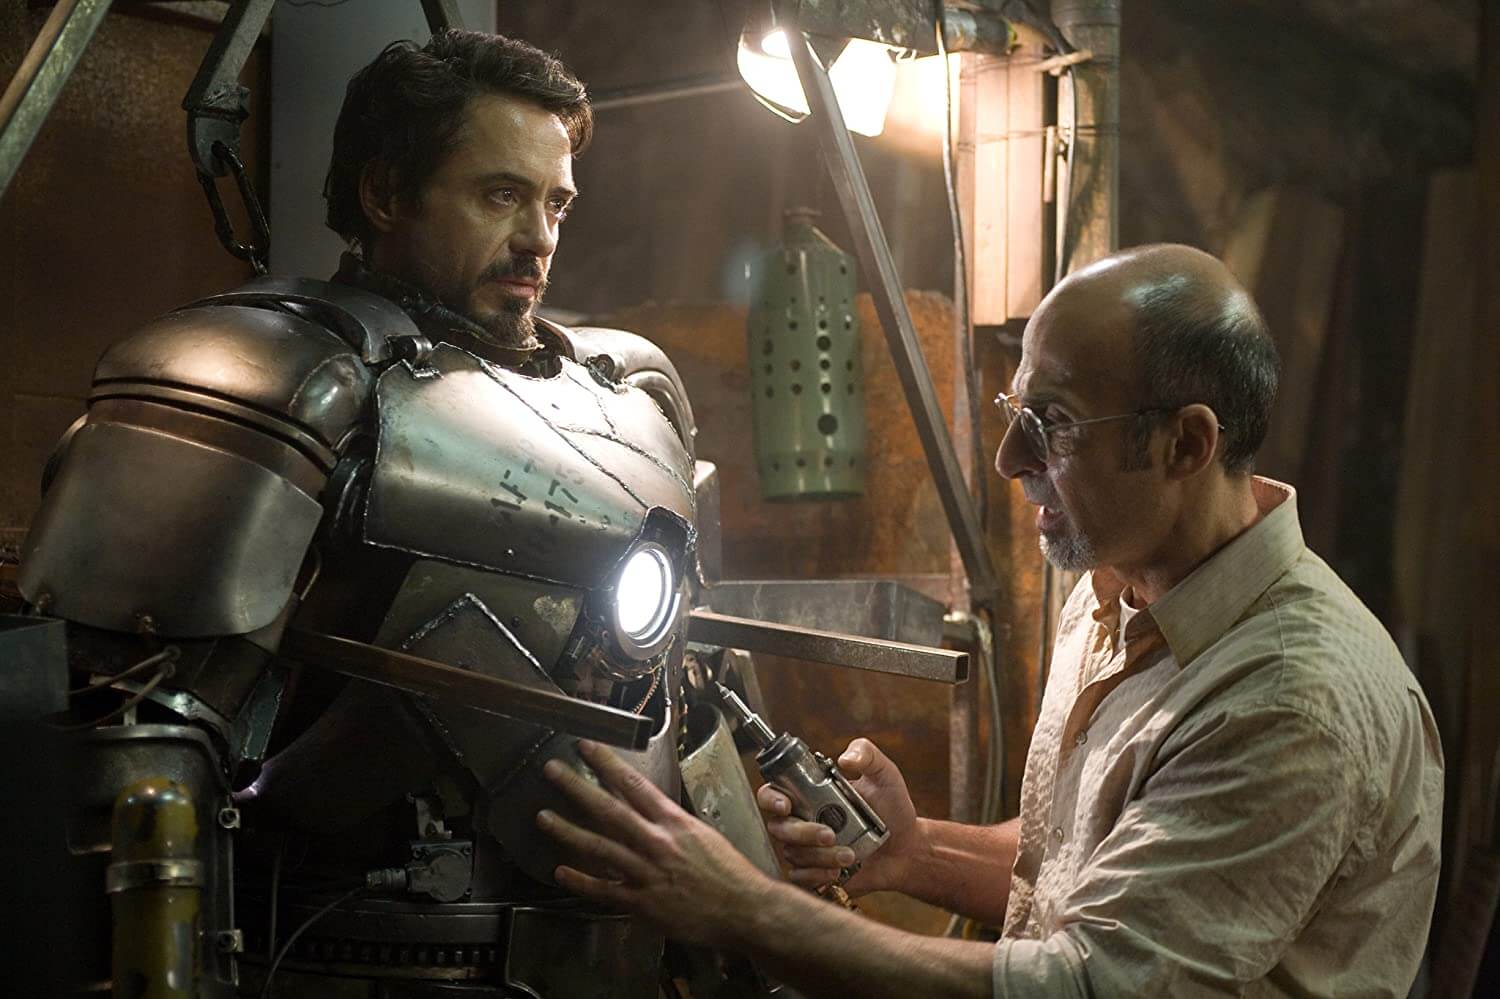 โกดังหนังรีวิว - Iron Man Jon Favreau ผู้กำกับเป็นคนที่ผลักดันให้ Robert Downey Jr คว้าบท Tony Stark